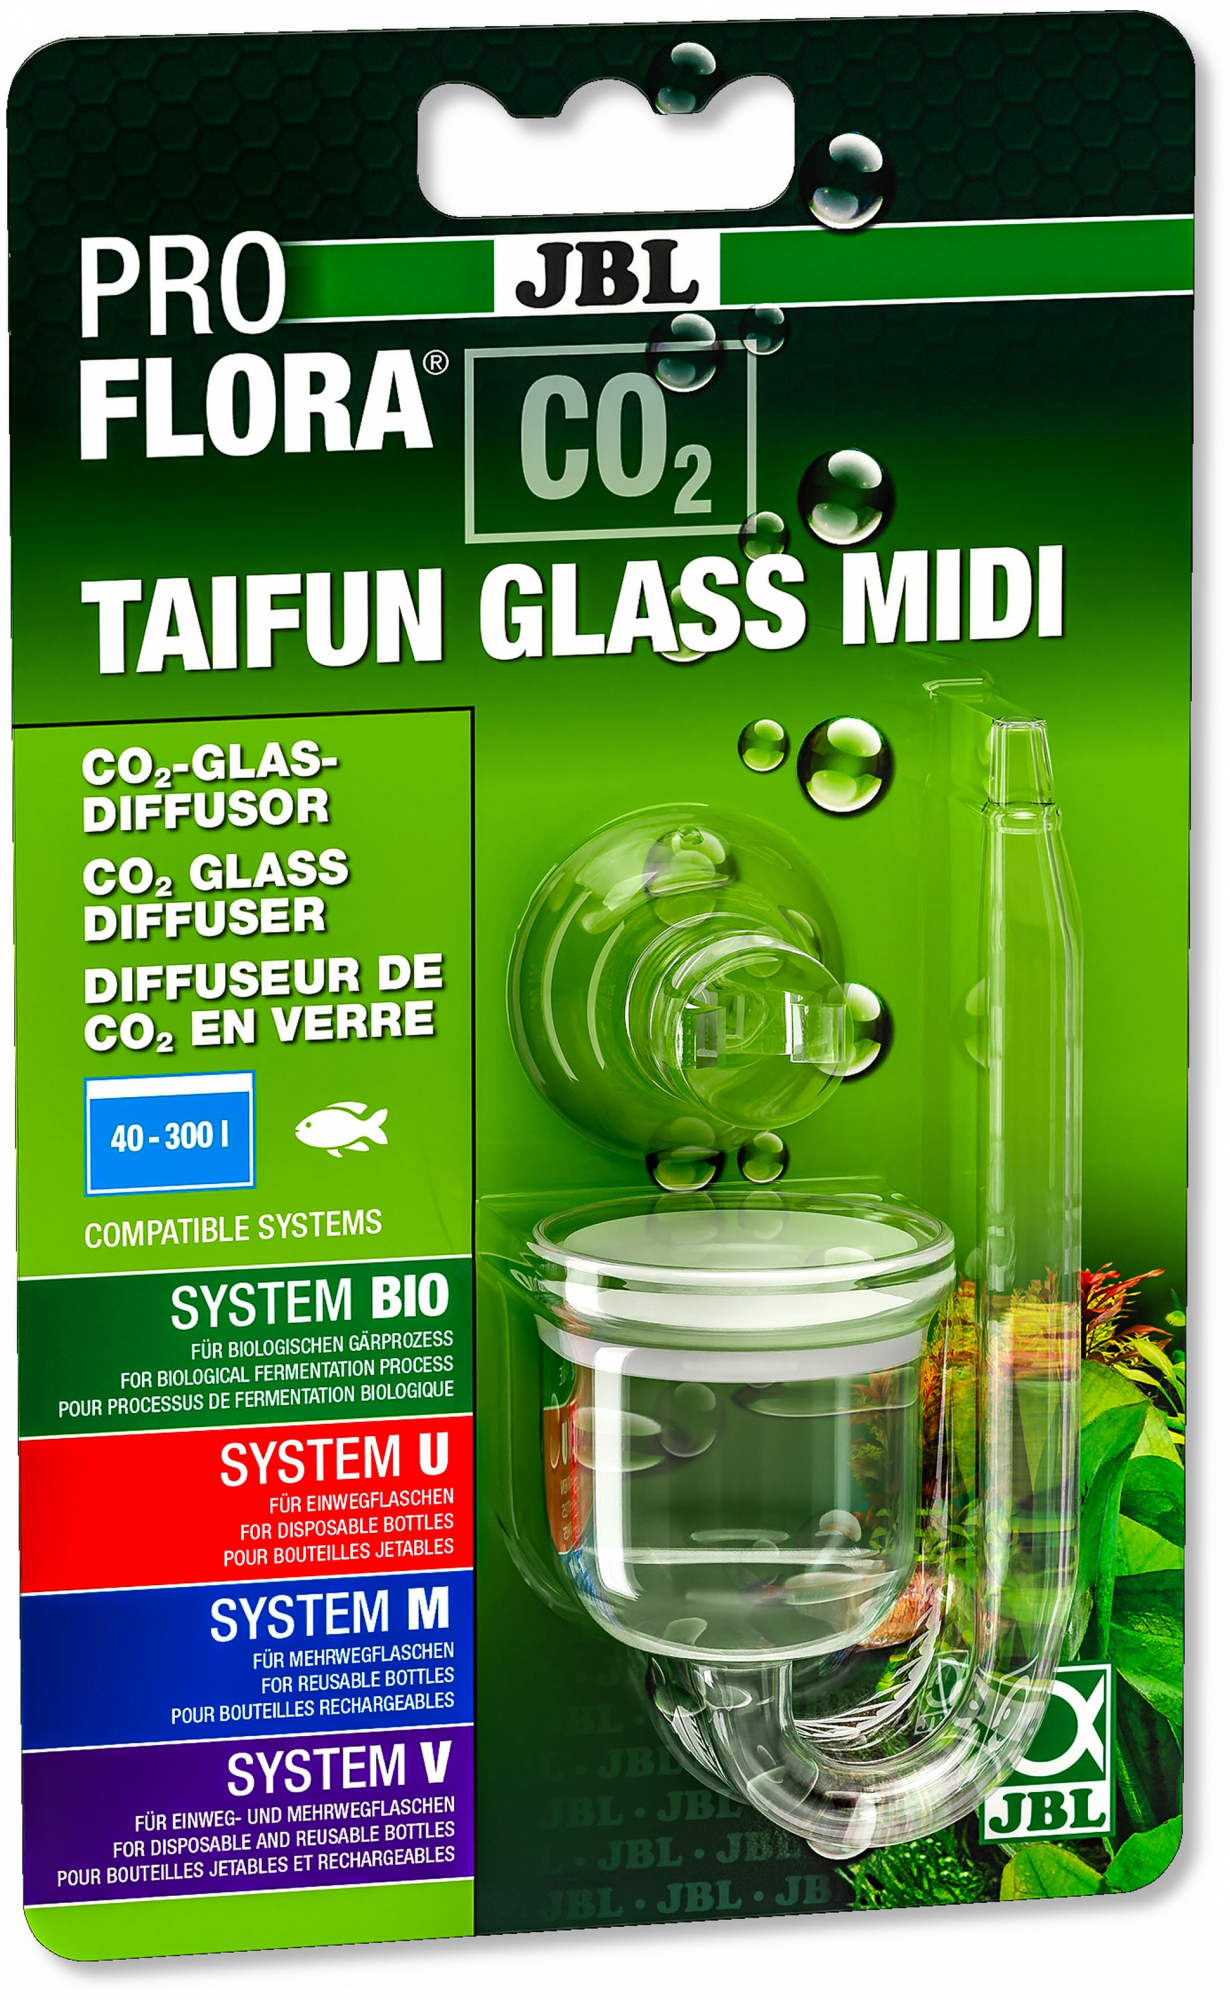 JBL Proflora Taifun Glass Midi Diffusore CO2 in vetro